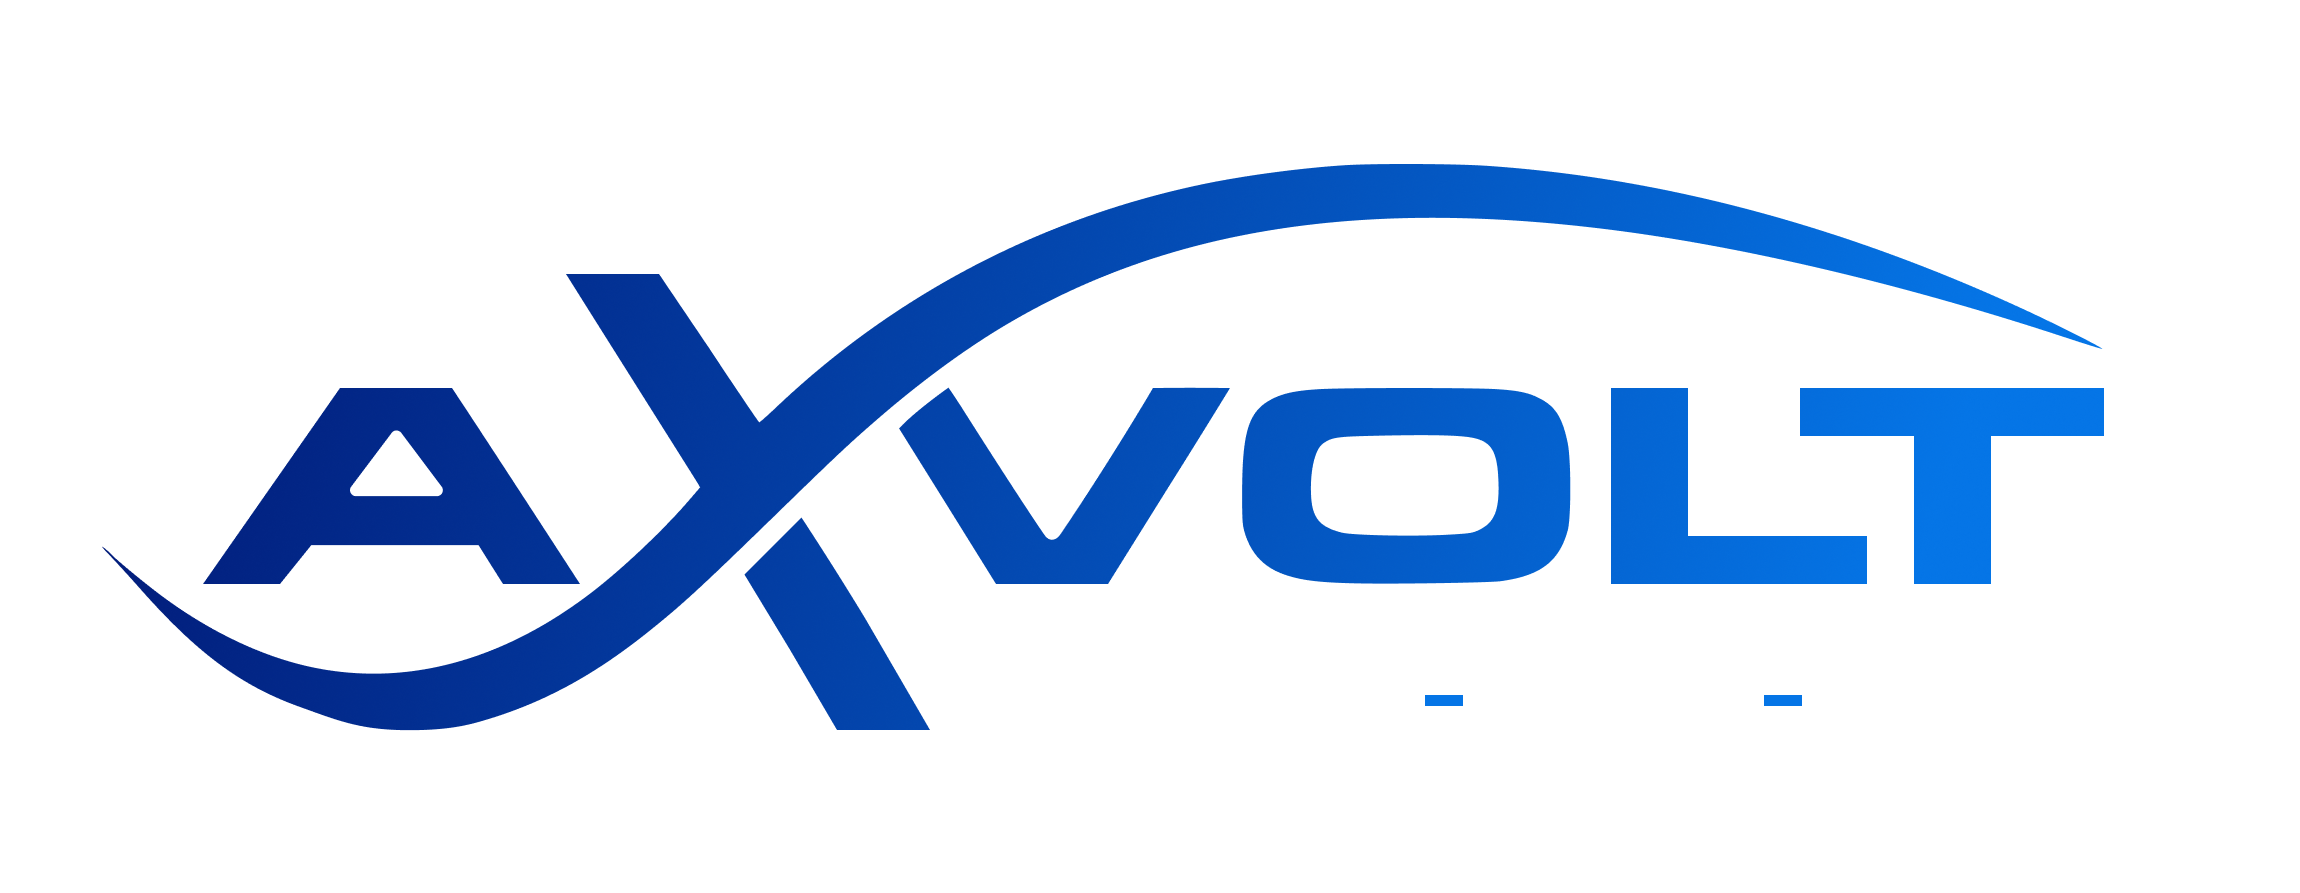 High-Performance Transformer manufacturer in Gujarat | Axvolt